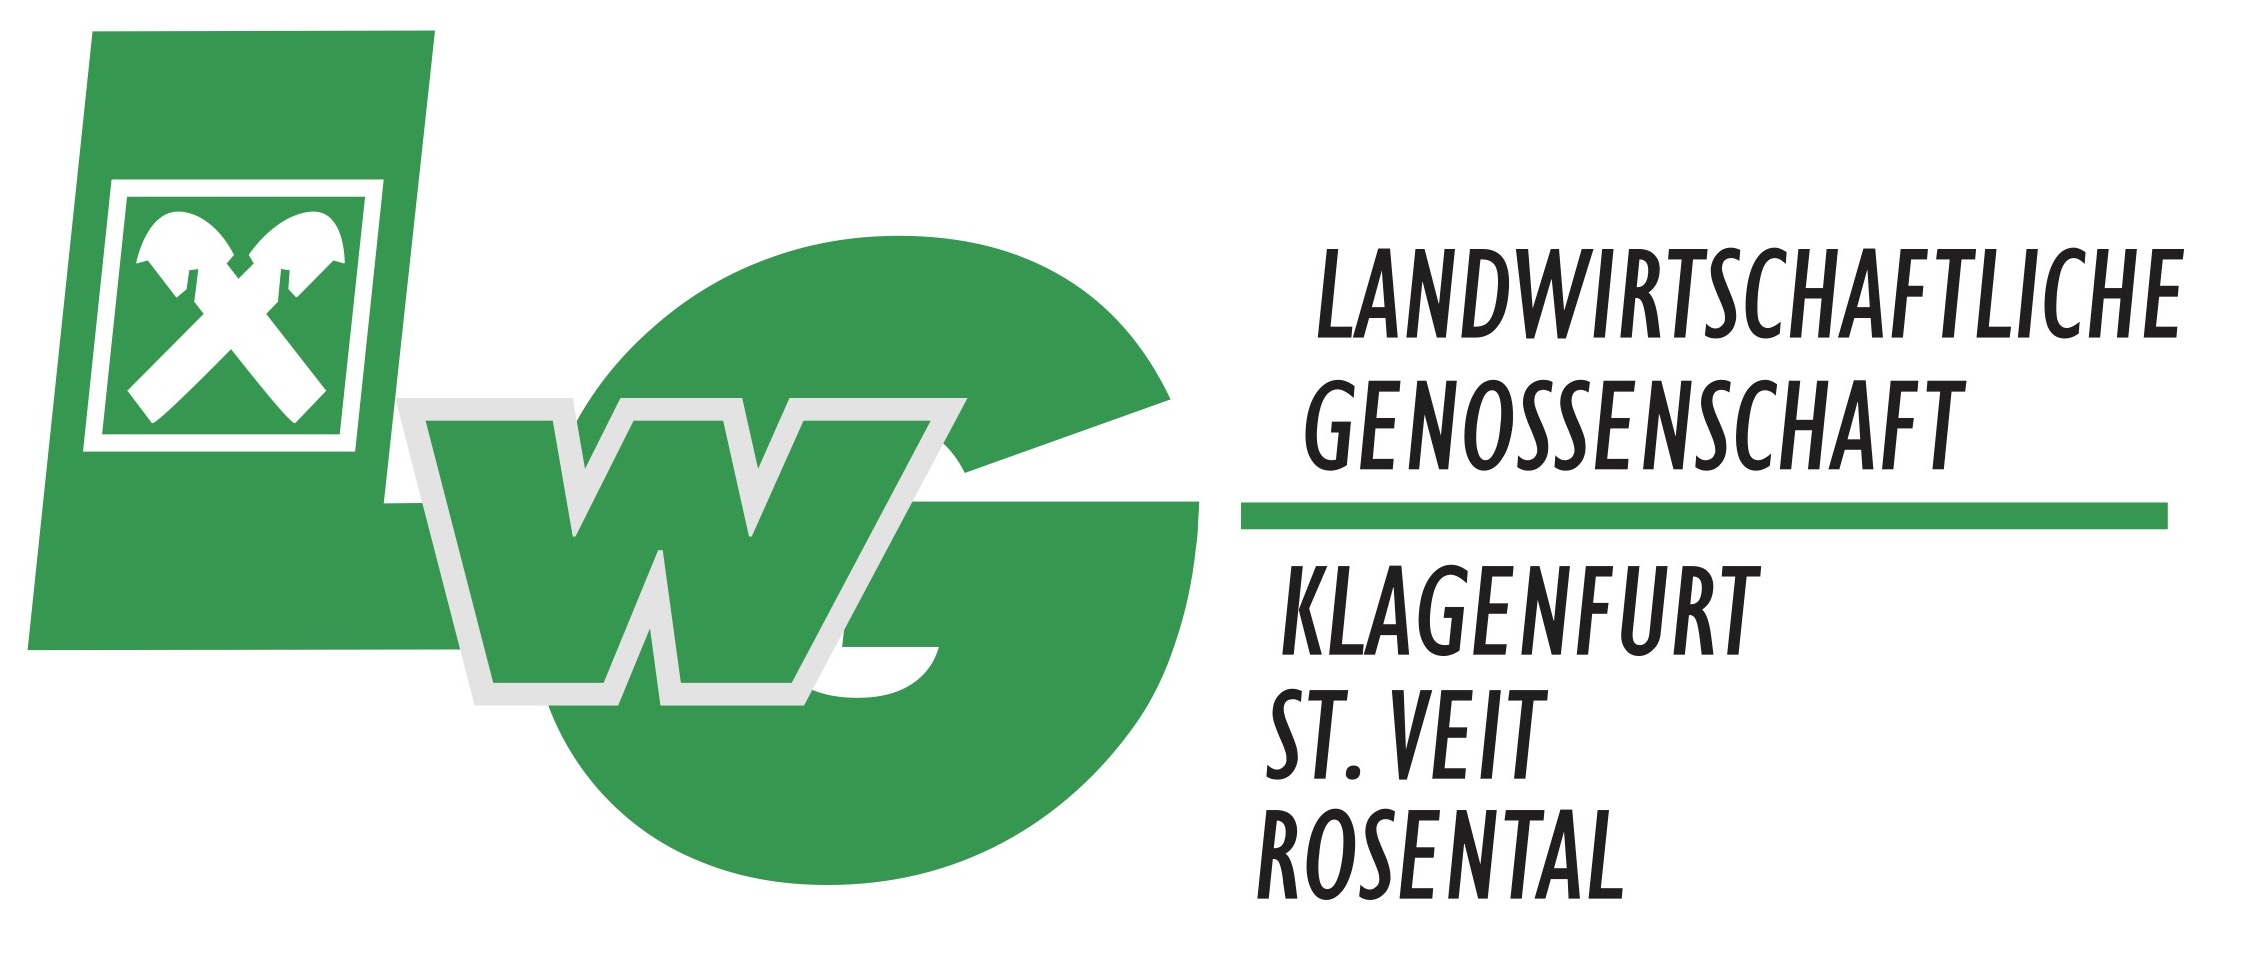 Landwirtschaftliche Genossenschaft Logo